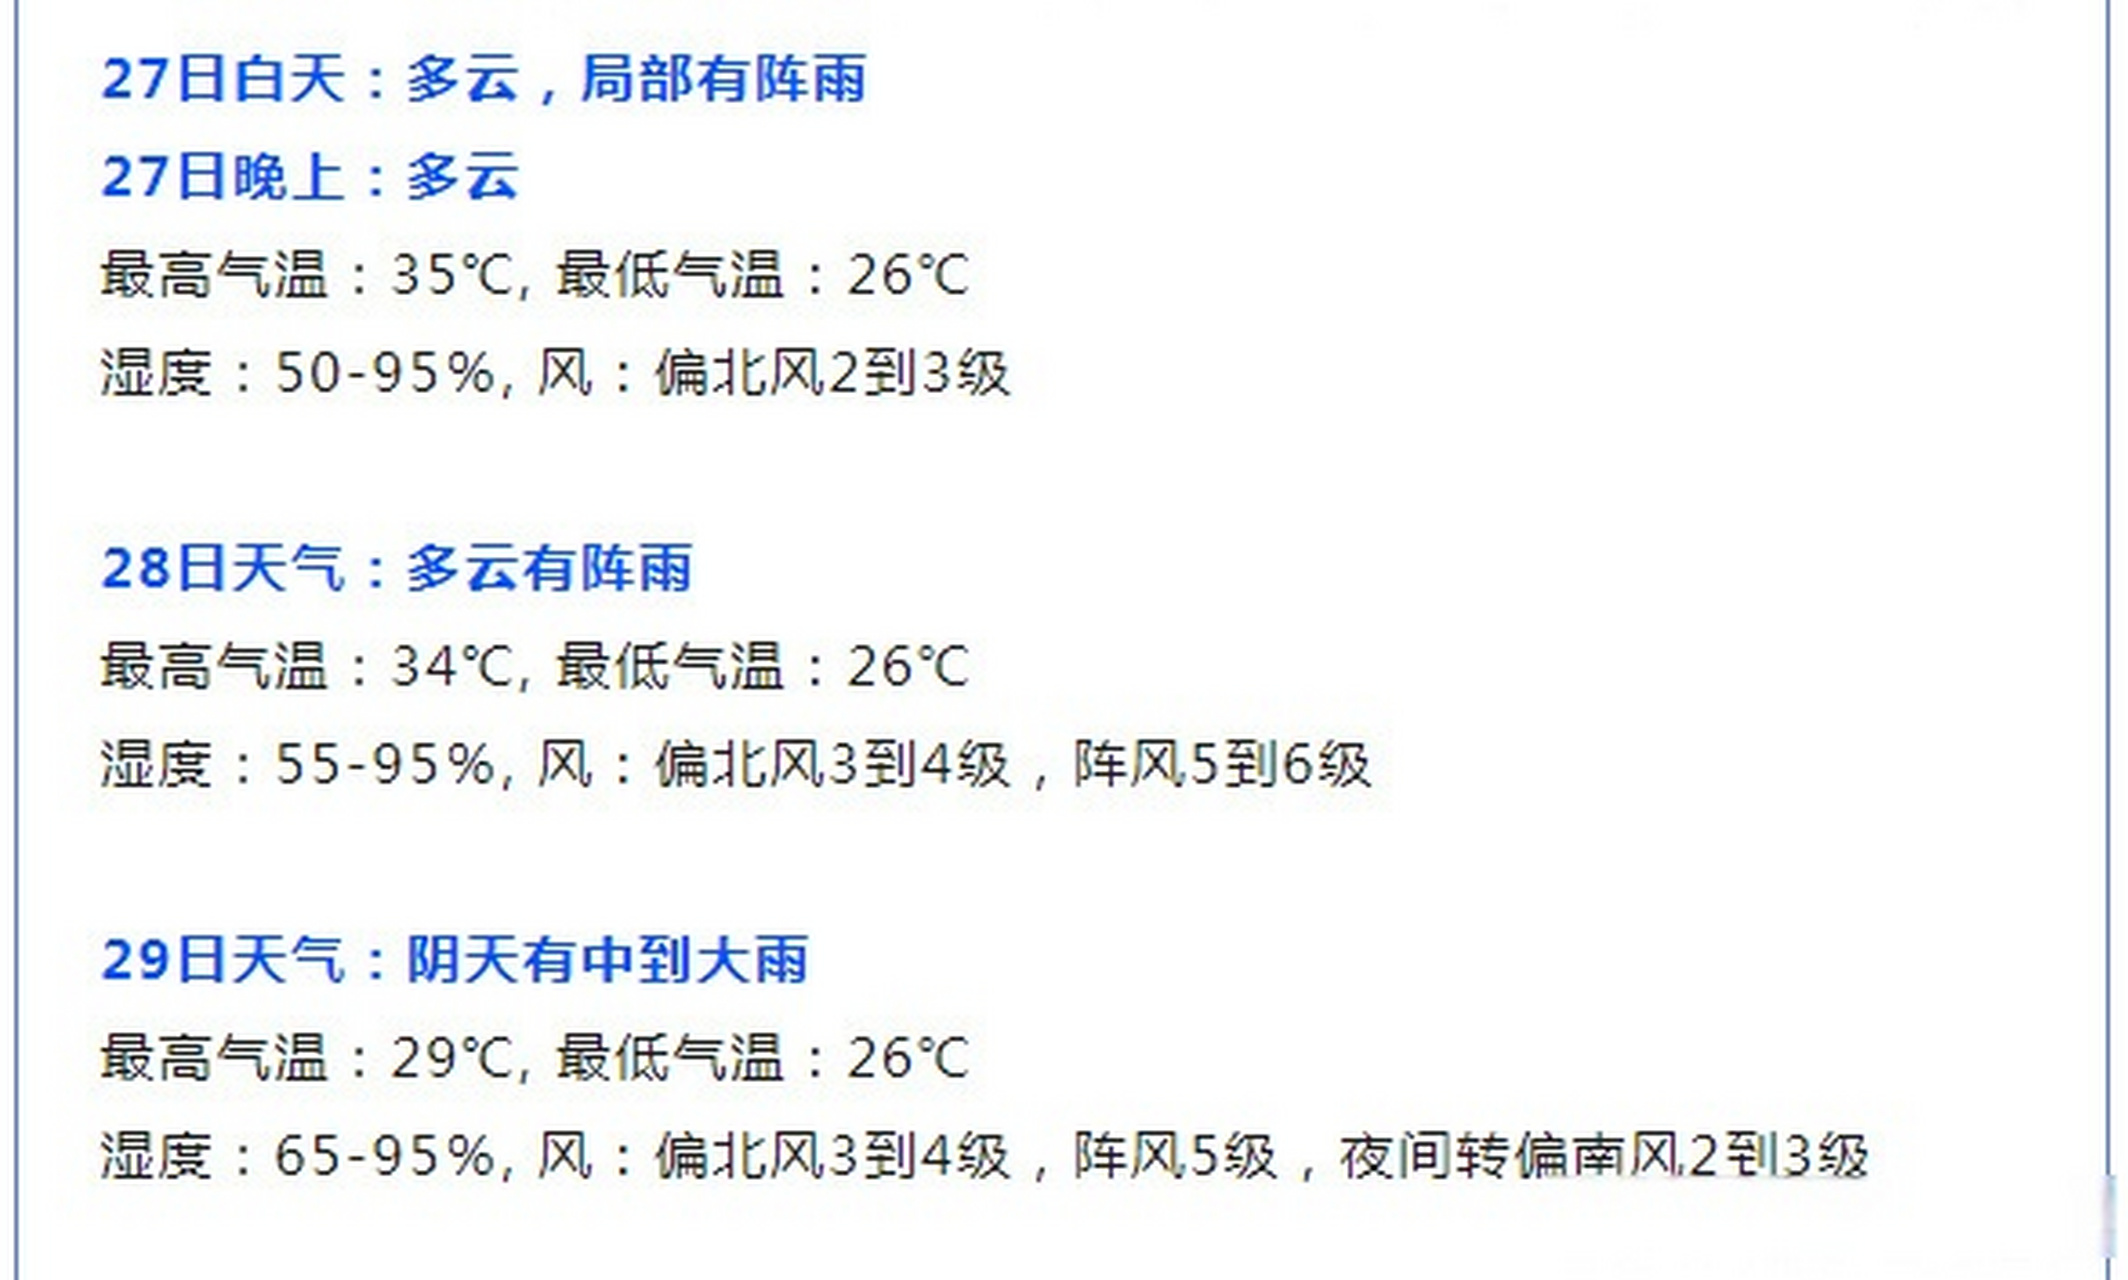 武汉天气预报一周图片